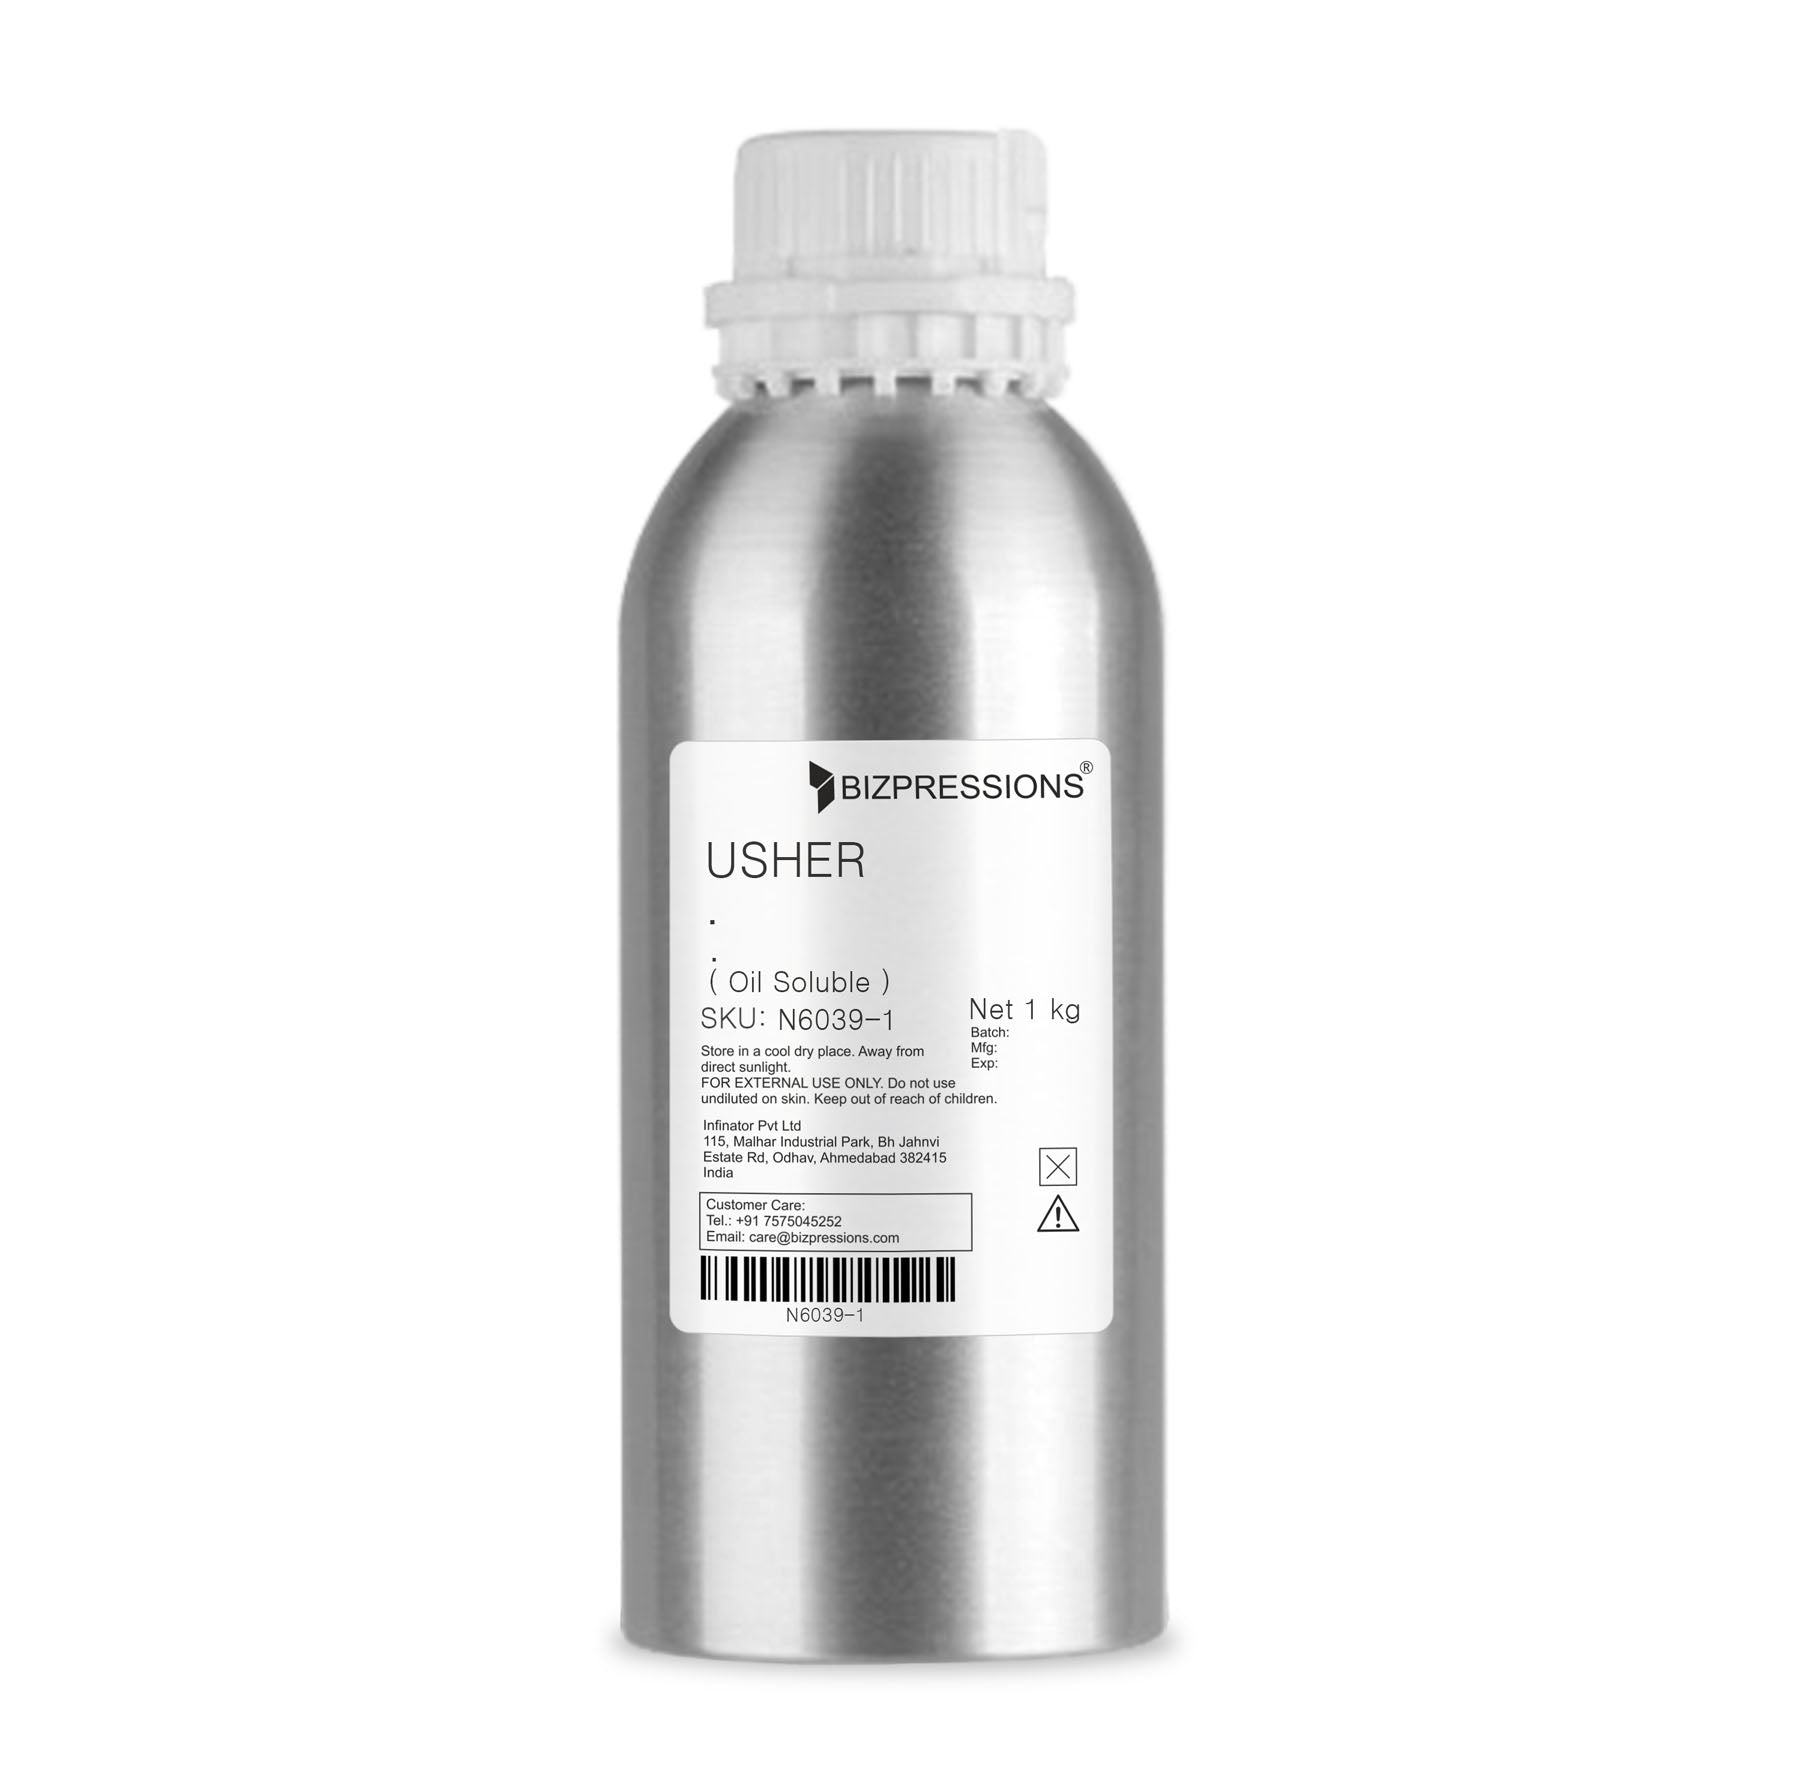 USHER - Fragrance ( Oil Soluble ) - 1 kg